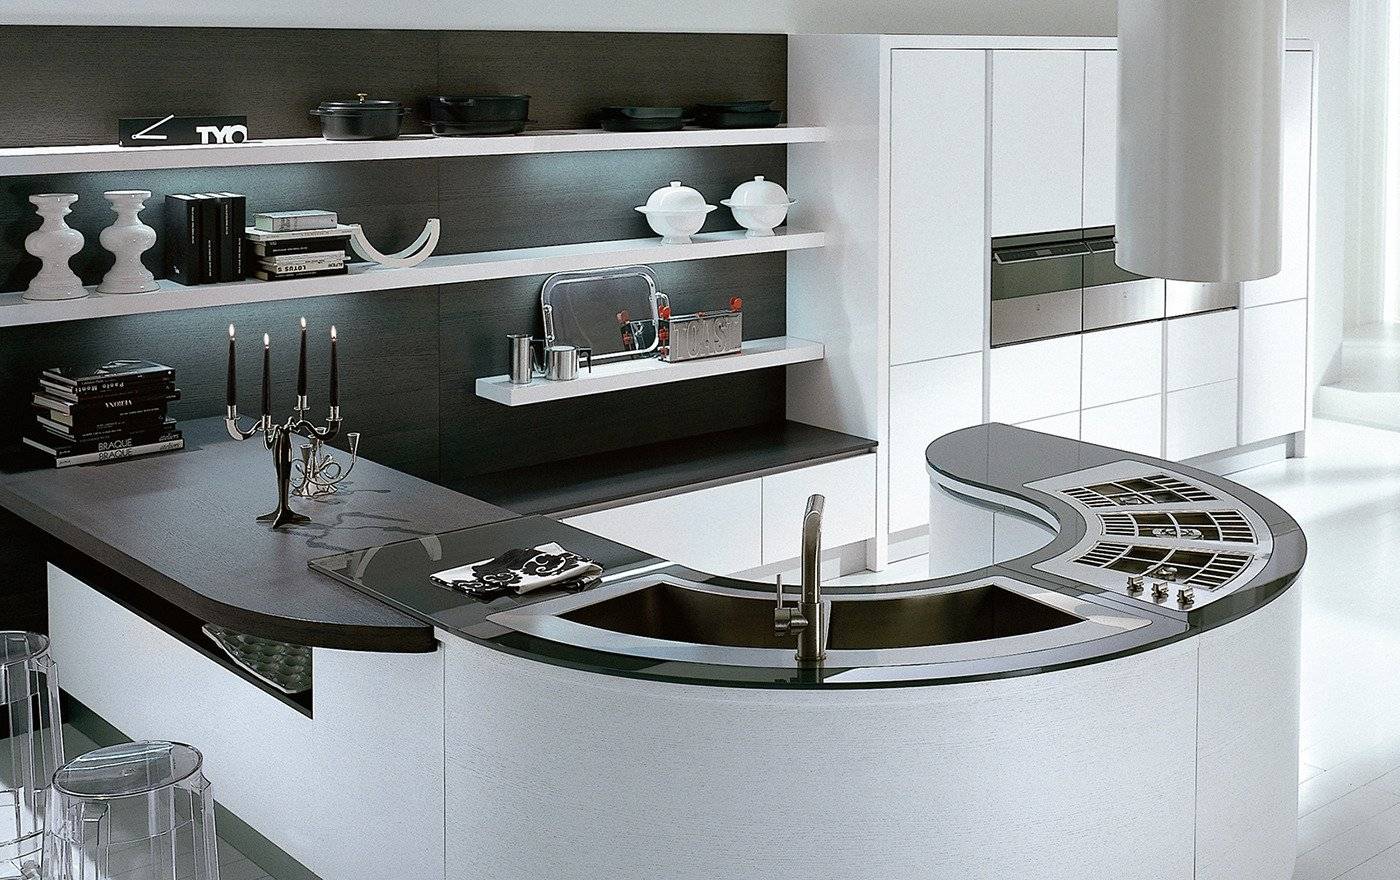 Кухонный гарнитур круглой формы – необычная деталь в дизайне интерьера